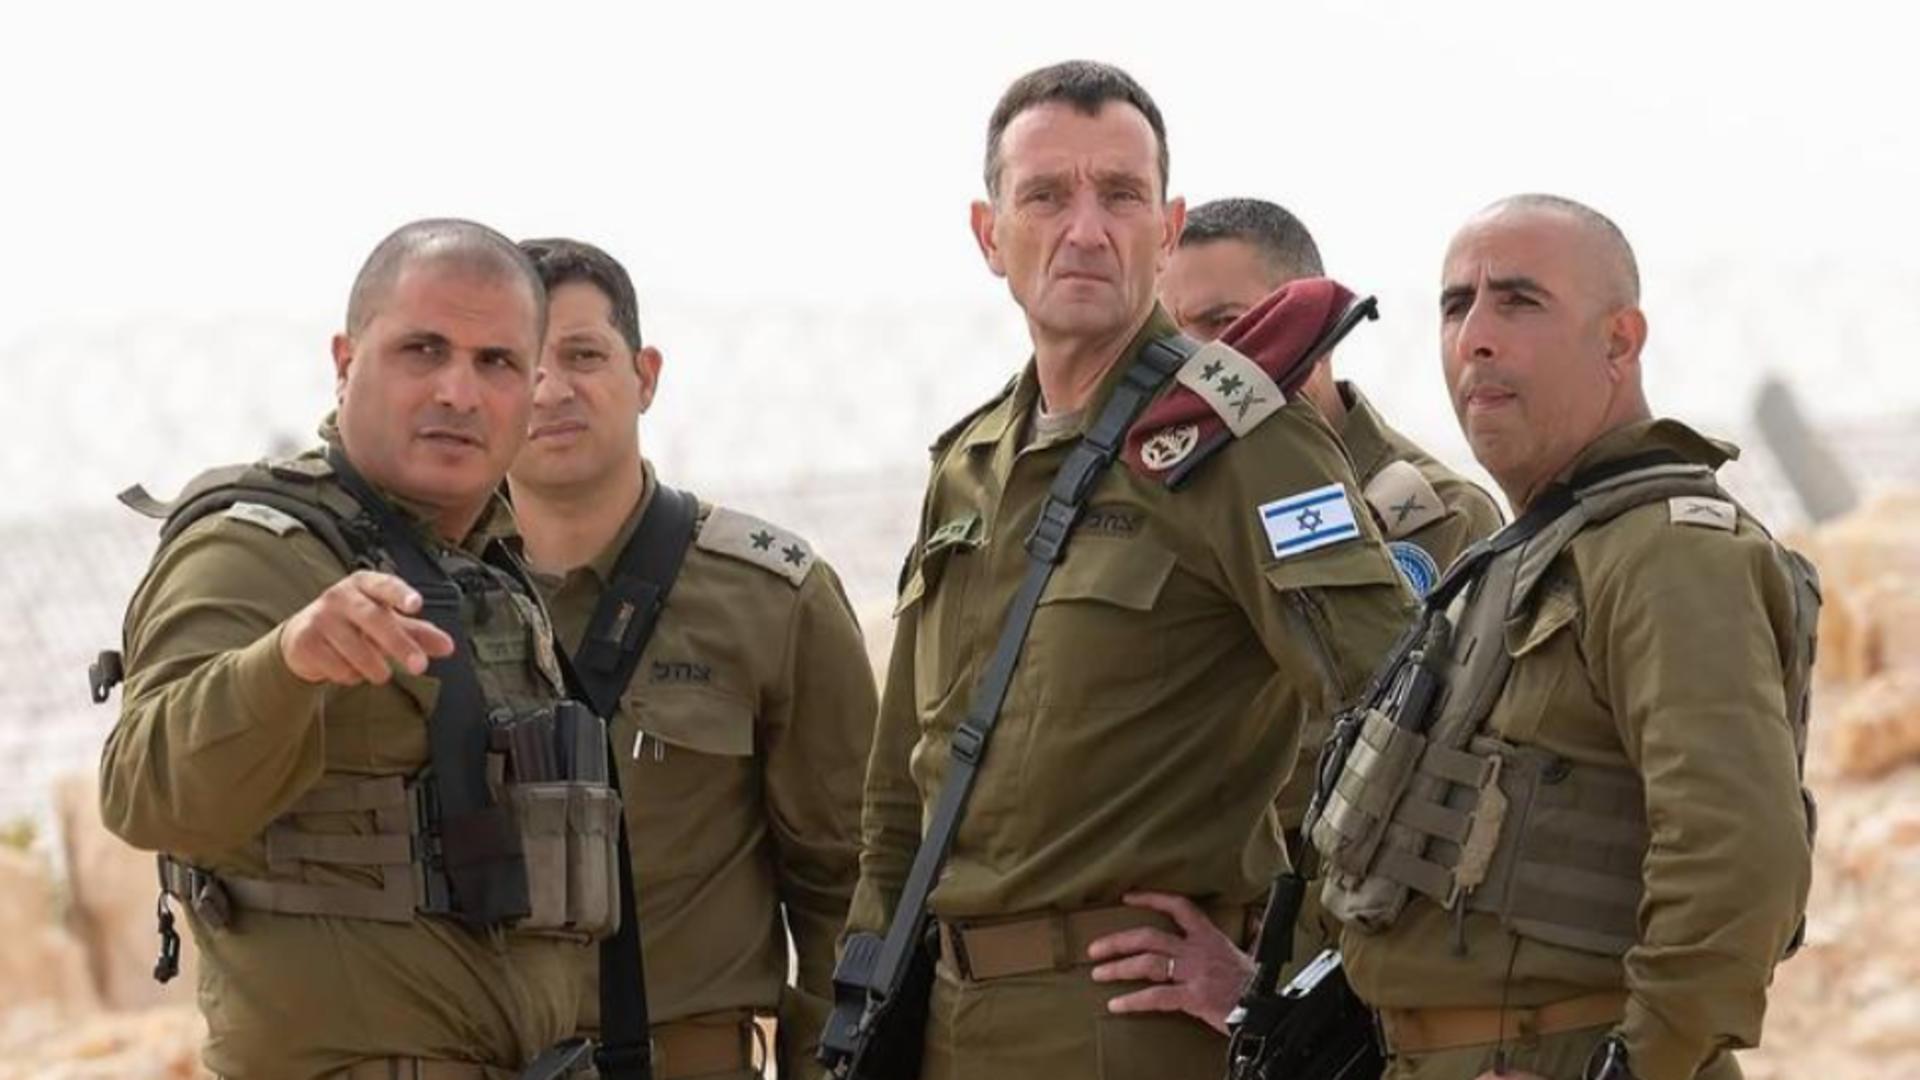 Șeful Statului major al Armatei israeliene și-a asumat responsabilitatea sa și a subalternilor pentru uciderea celor 3 ostatici în Gaza